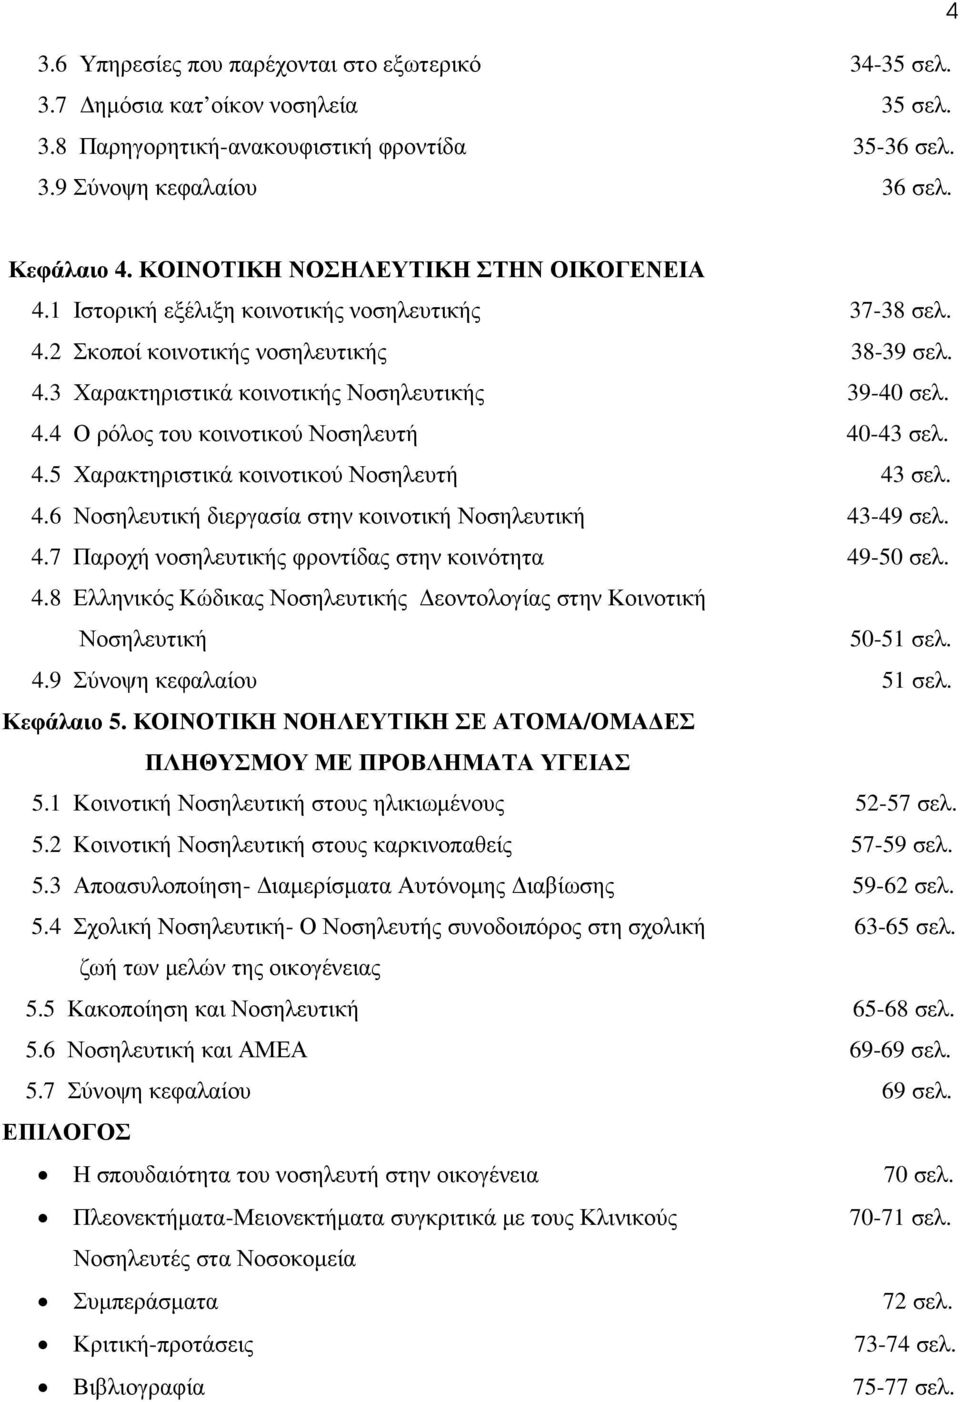 4.5 Χαρακτηριστικά κοινοτικού Νοσηλευτή 43 σελ. 4.6 Νοσηλευτική διεργασία στην κοινοτική Νοσηλευτική 43-49 σελ. 4.7 Παροχή νοσηλευτικής φροντίδας στην κοινότητα 49-50 σελ. 4.8 Ελληνικός Κώδικας Νοσηλευτικής εοντολογίας στην Κοινοτική Νοσηλευτική 50-51 σελ.